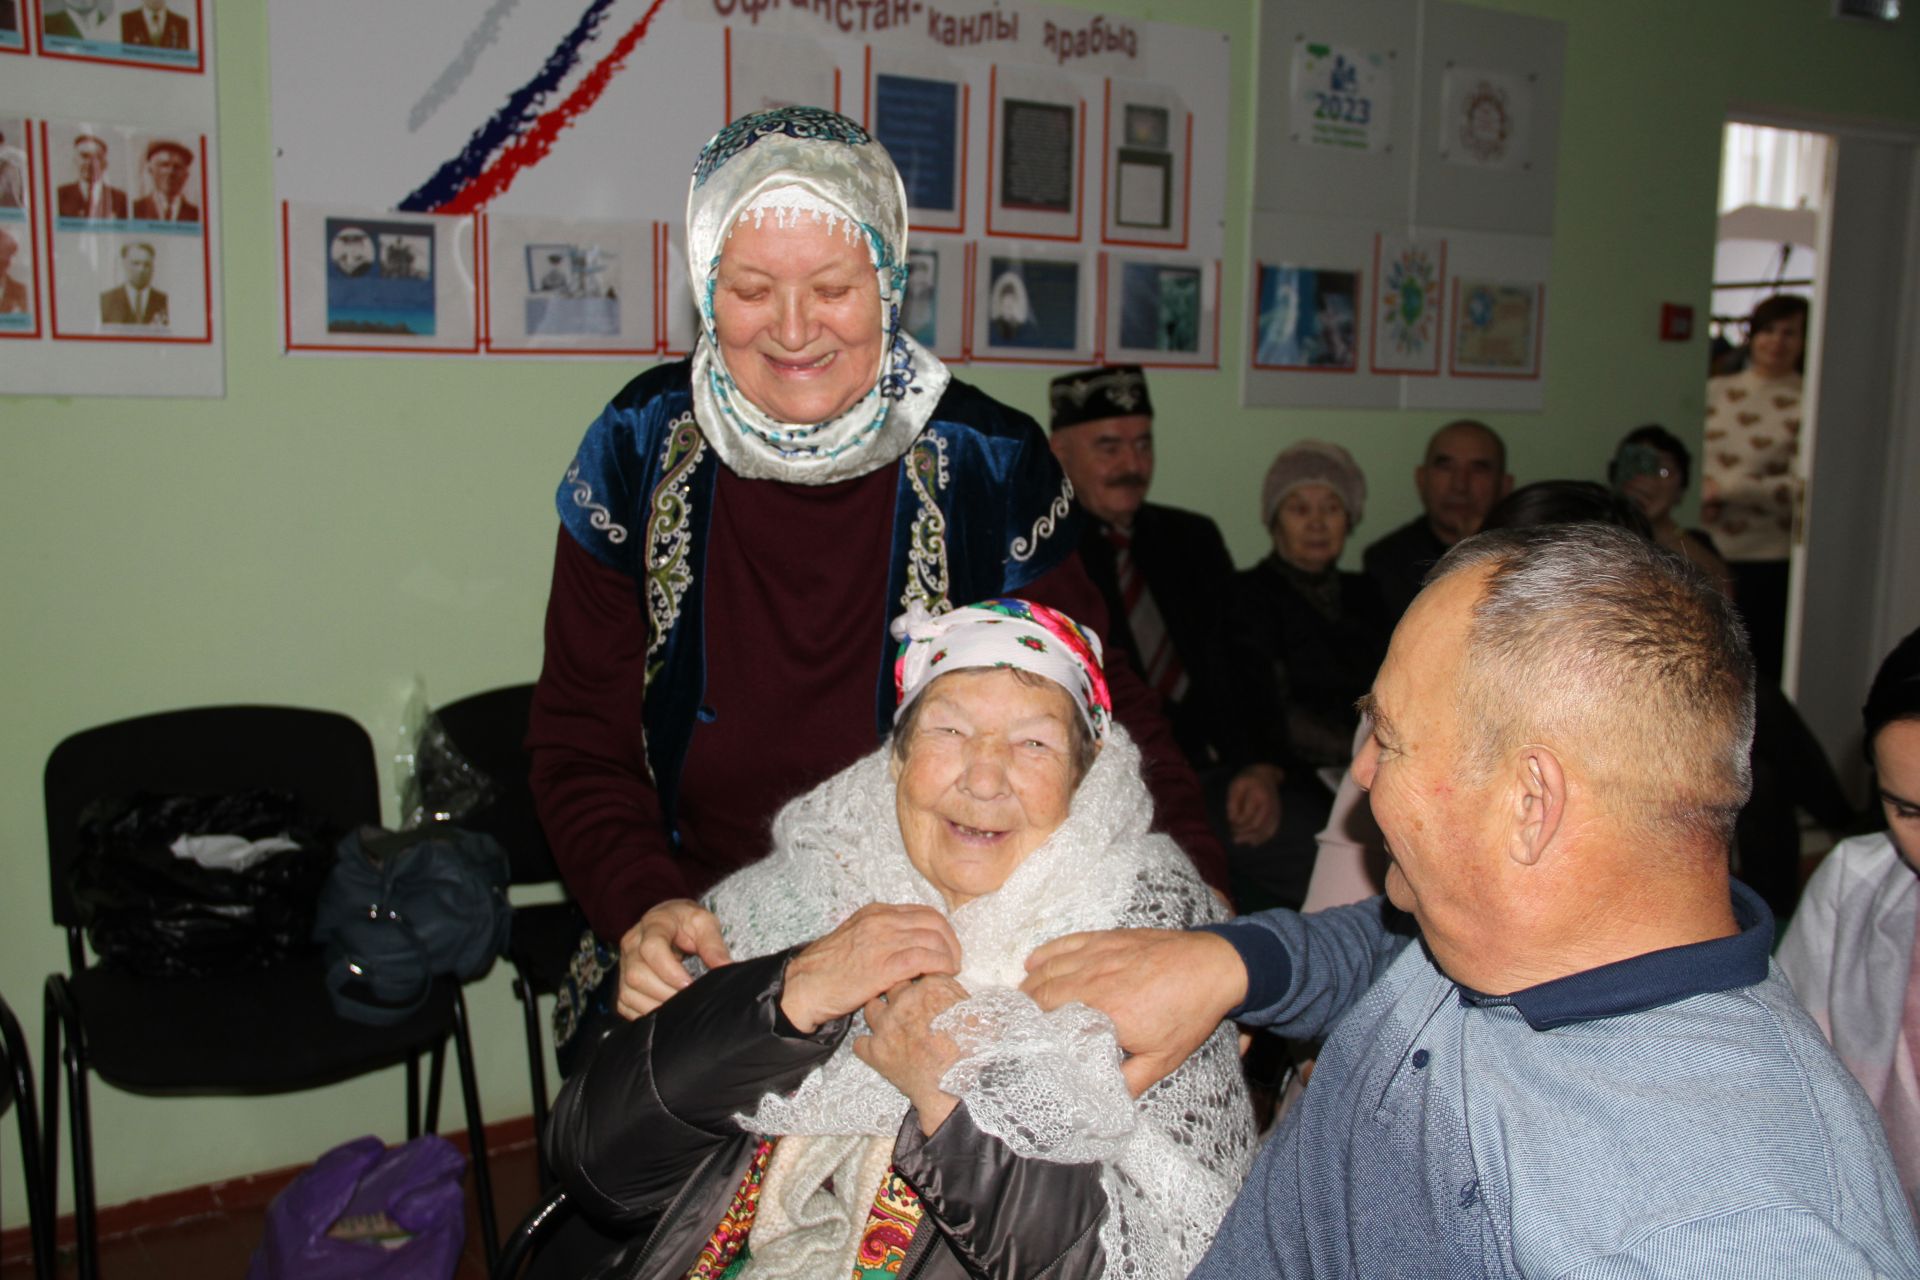 Салисә Гәрәеваның 85 яшьлек юбилеена багышланган әдәби-музыкаль кичә үткәрелде